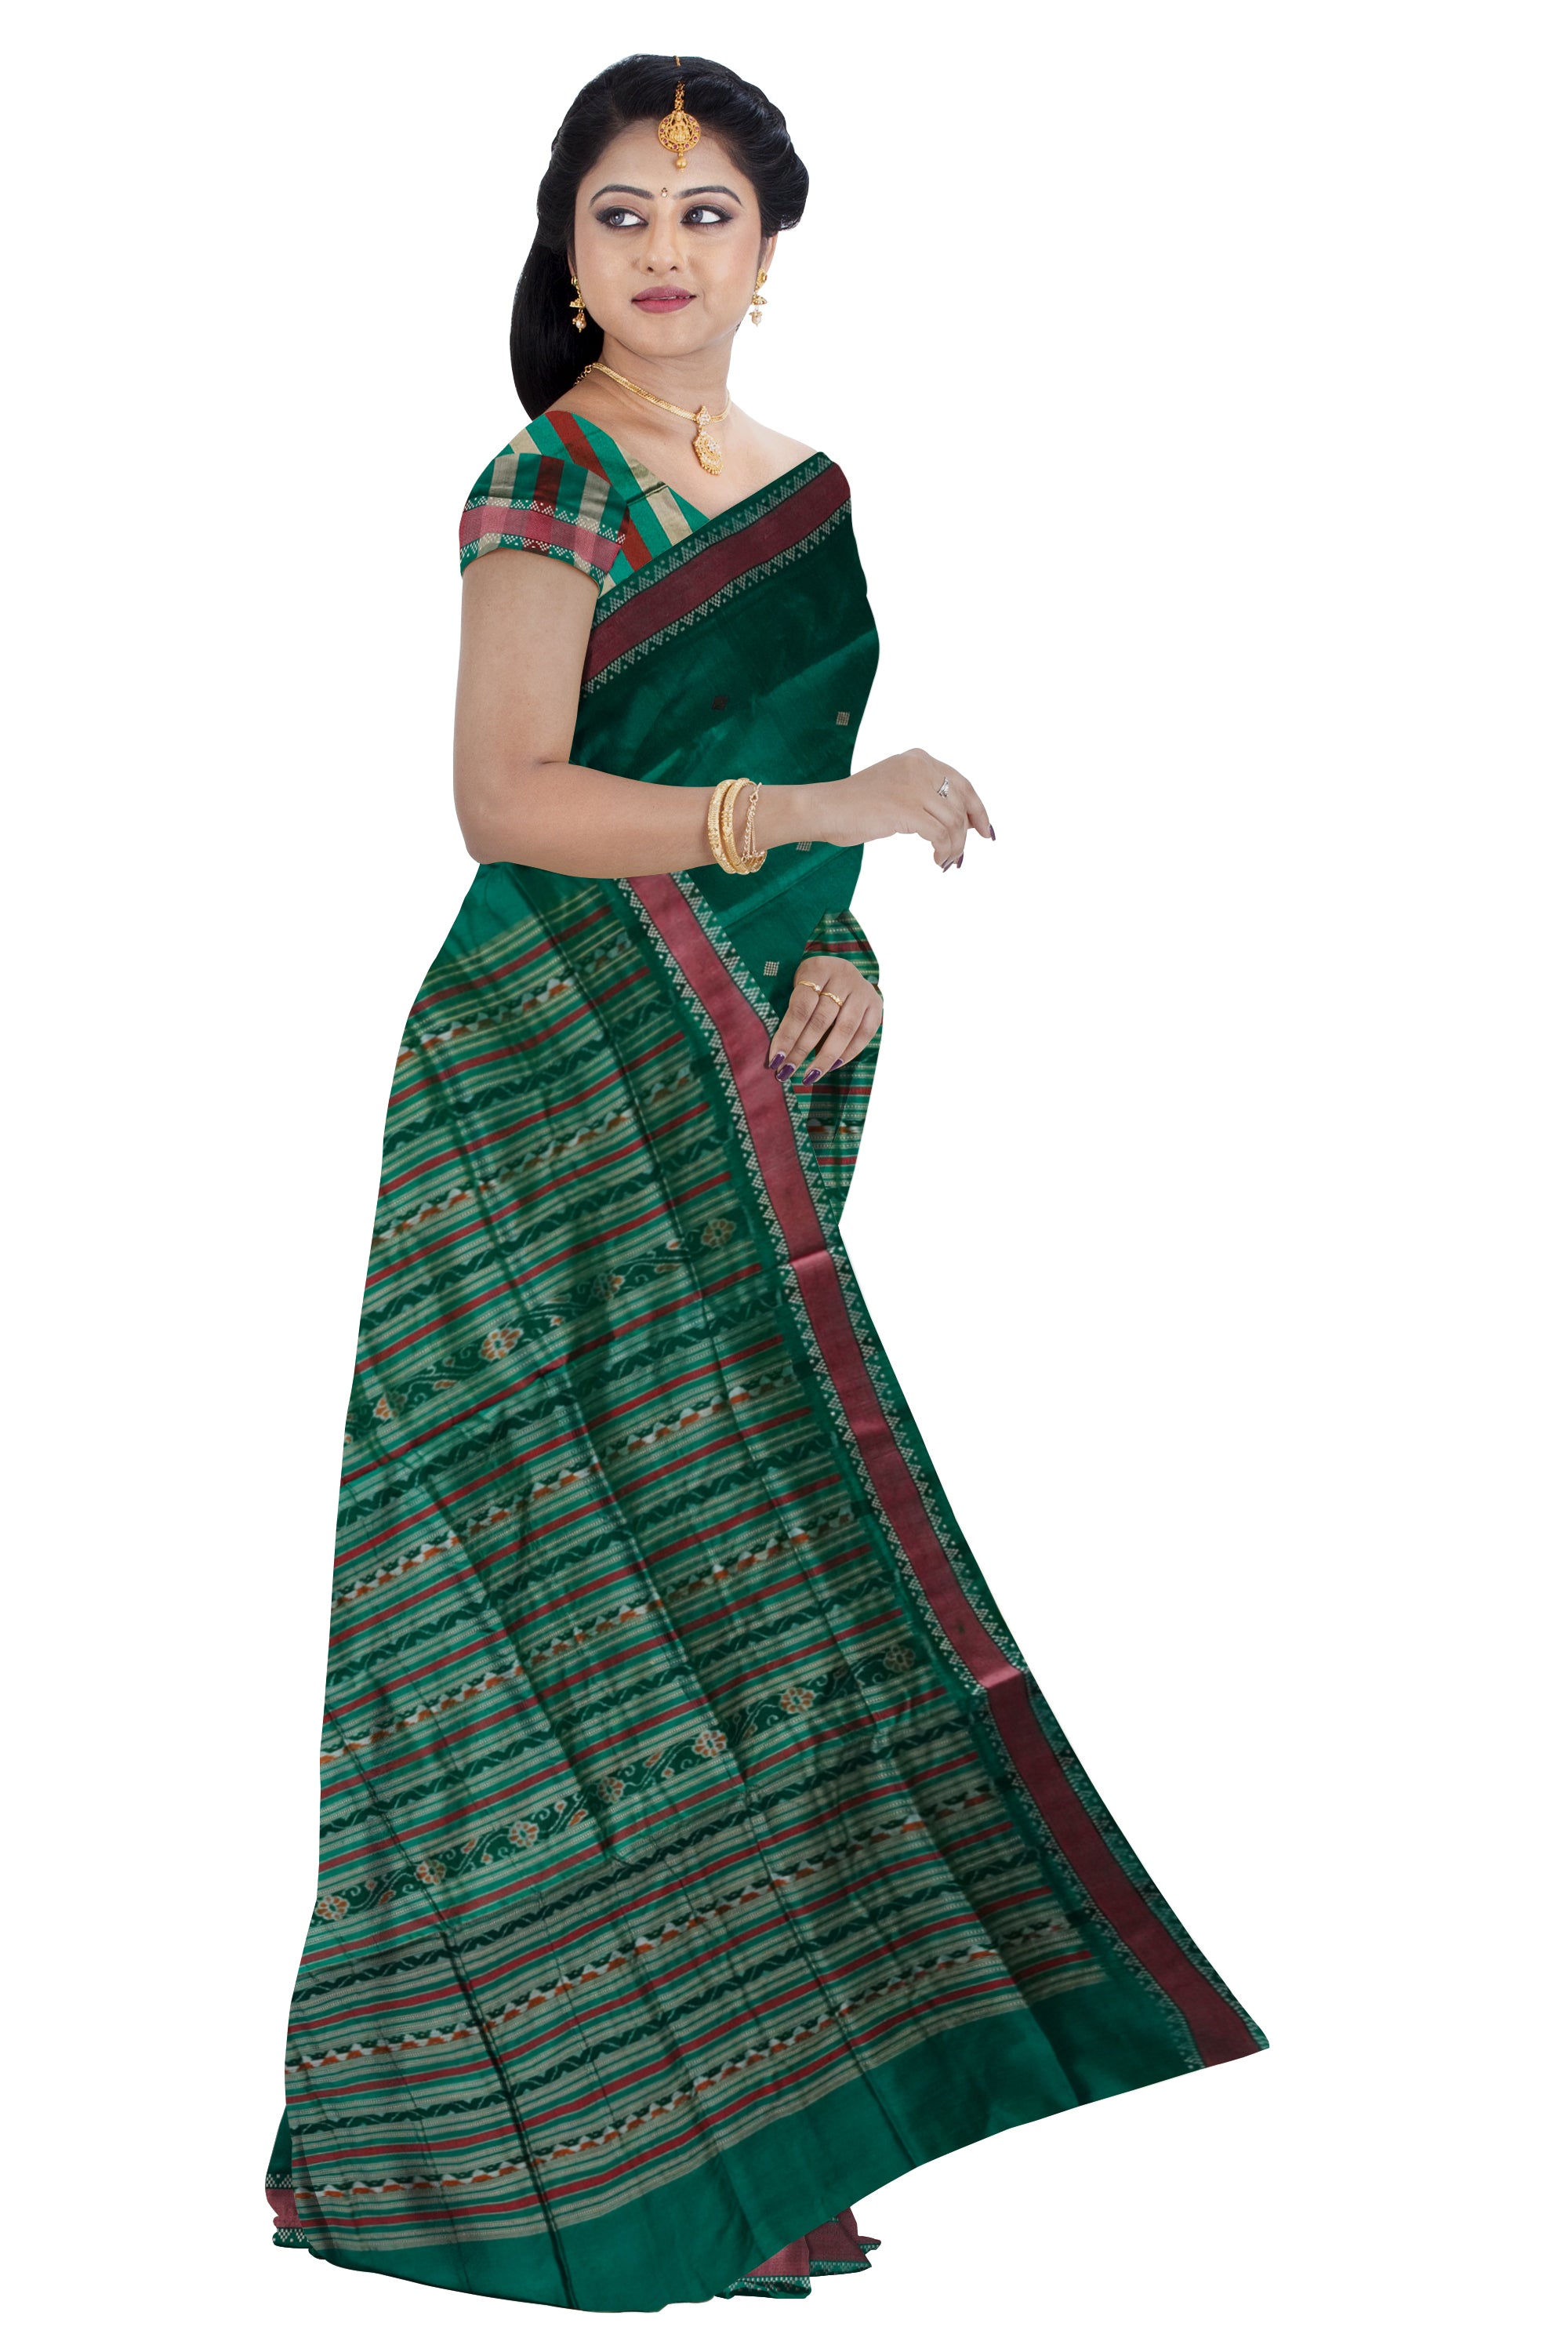 Hunter-green and Maroon color small border pattern plain pure pata saree. - Koshali Arts & Crafts Enterprise